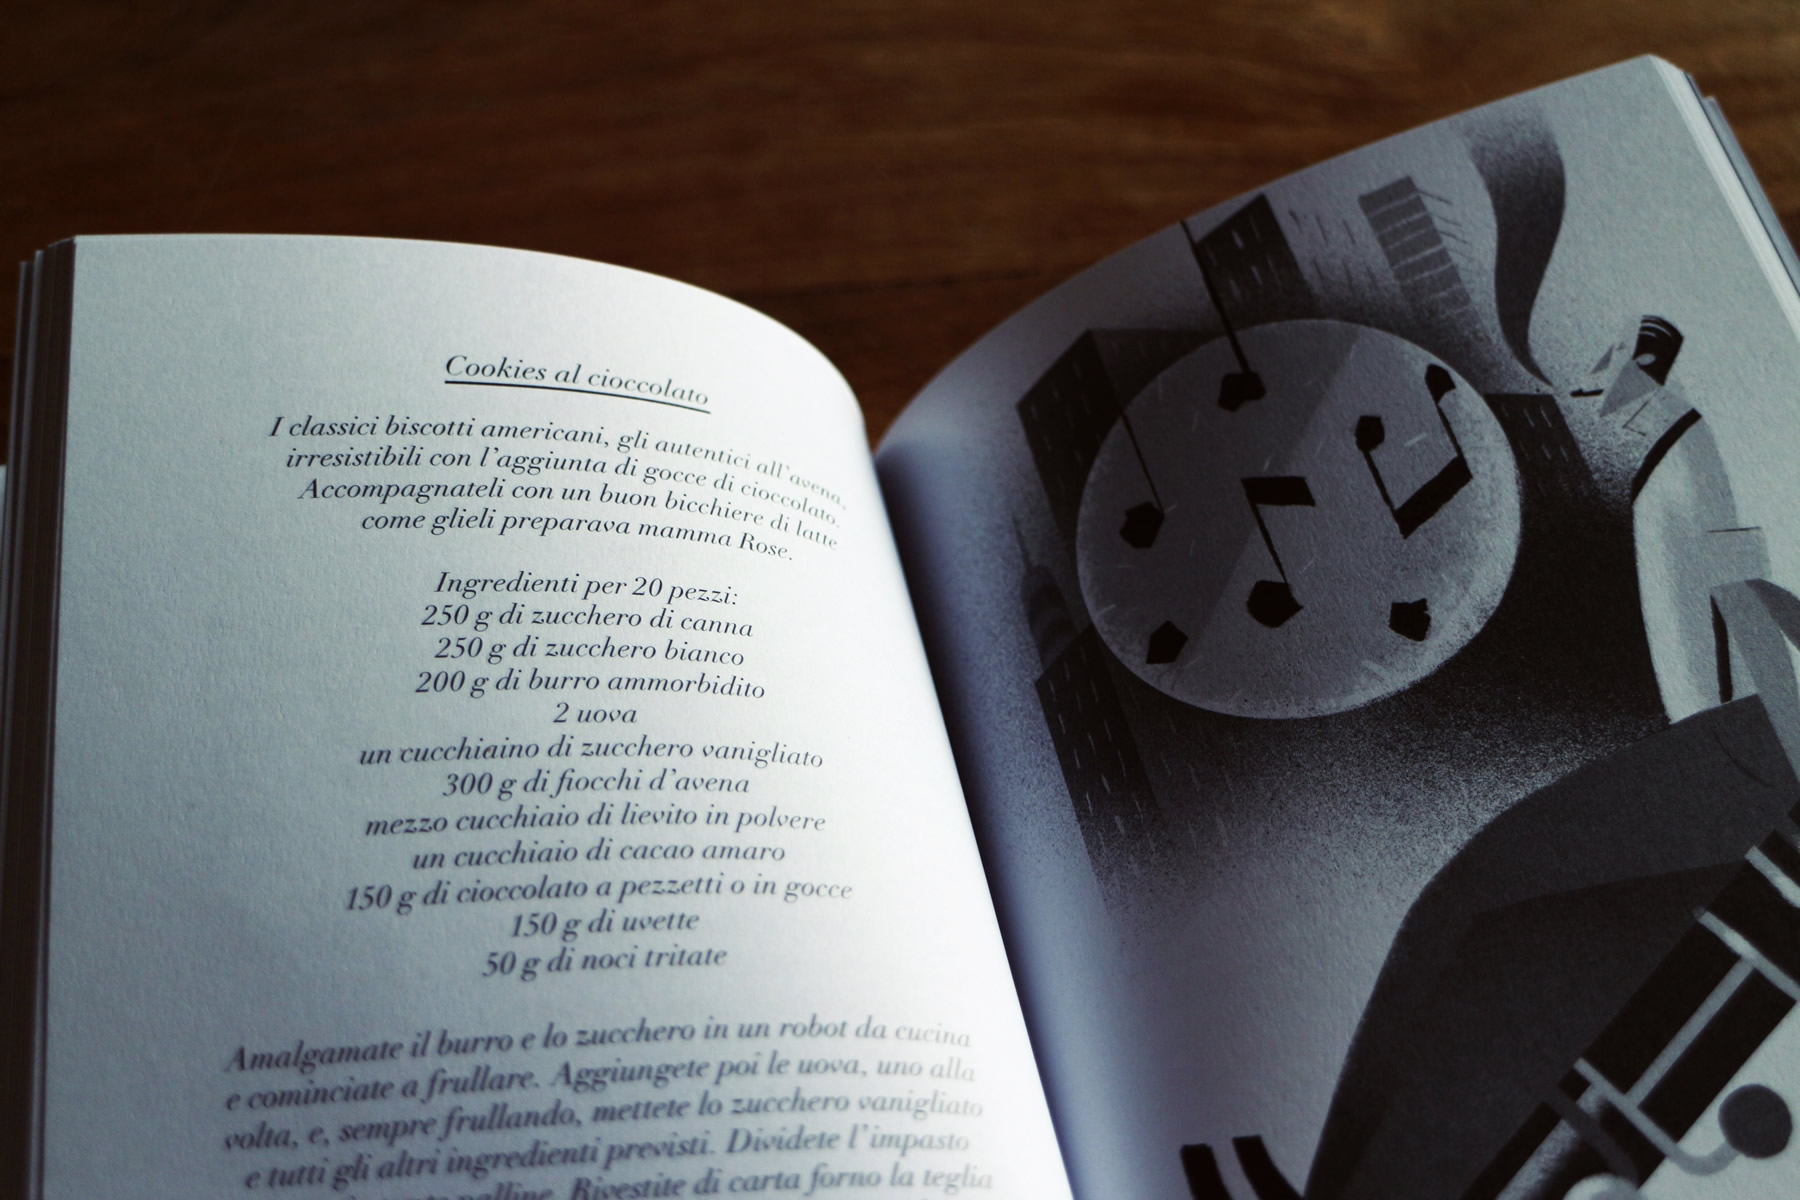 Forchette e melodie - Musicisti in cucina, di Gian Nicola Vessia, illustrazioni di Riccardo Guasco, Raum Italic 2016 (foto: Frizzifrizzi)